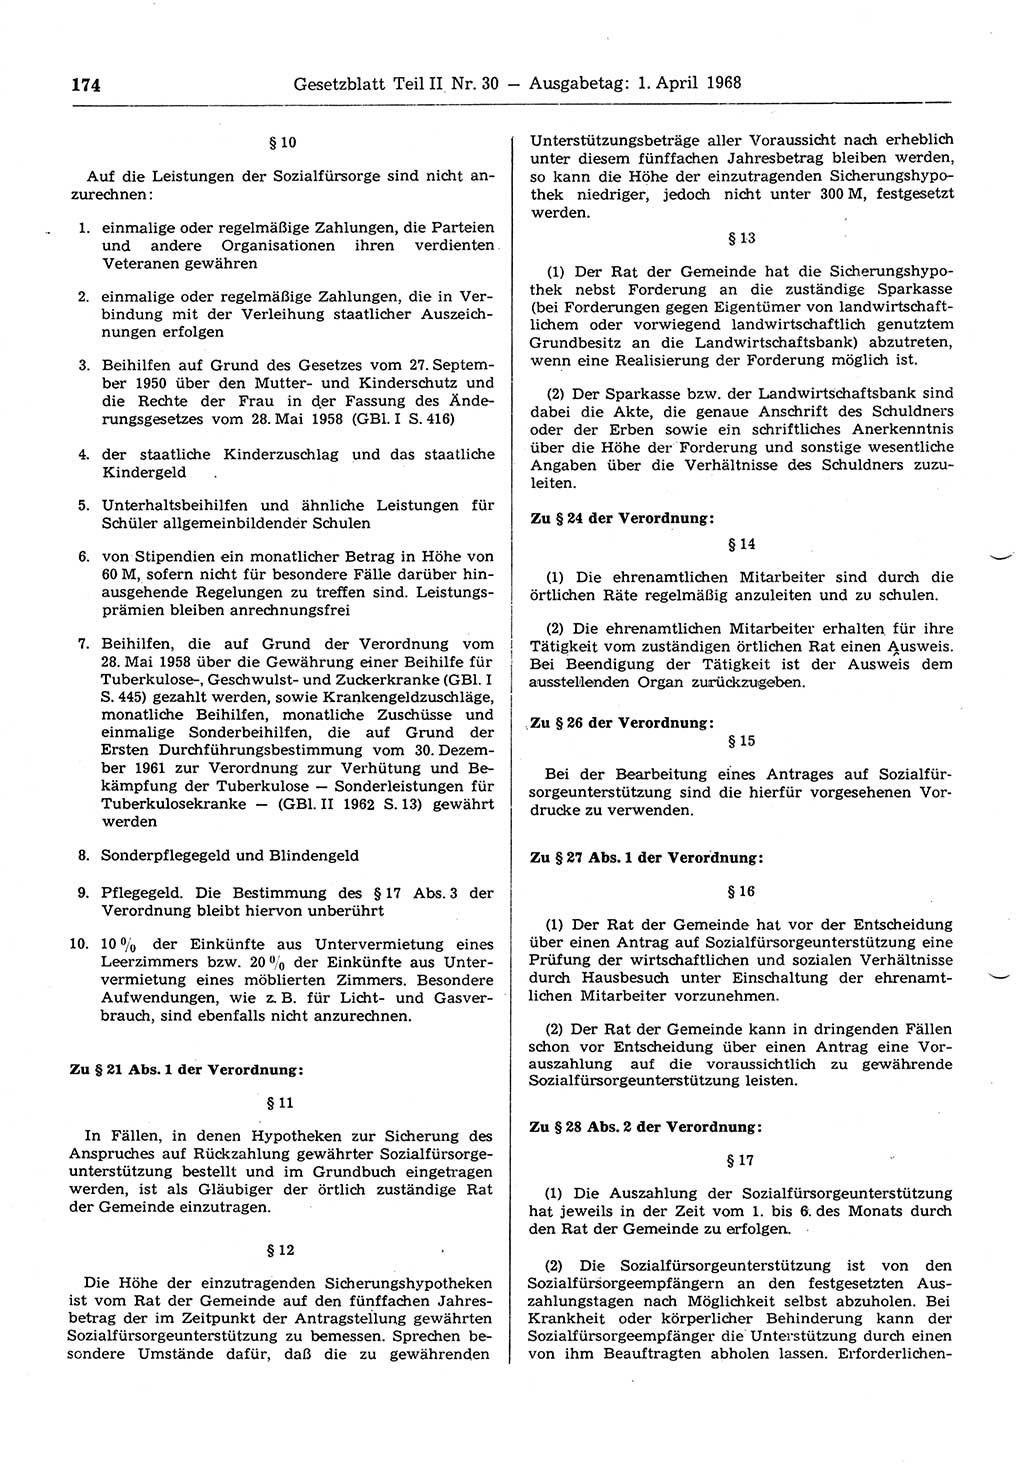 Gesetzblatt (GBl.) der Deutschen Demokratischen Republik (DDR) Teil ⅠⅠ 1968, Seite 174 (GBl. DDR ⅠⅠ 1968, S. 174)